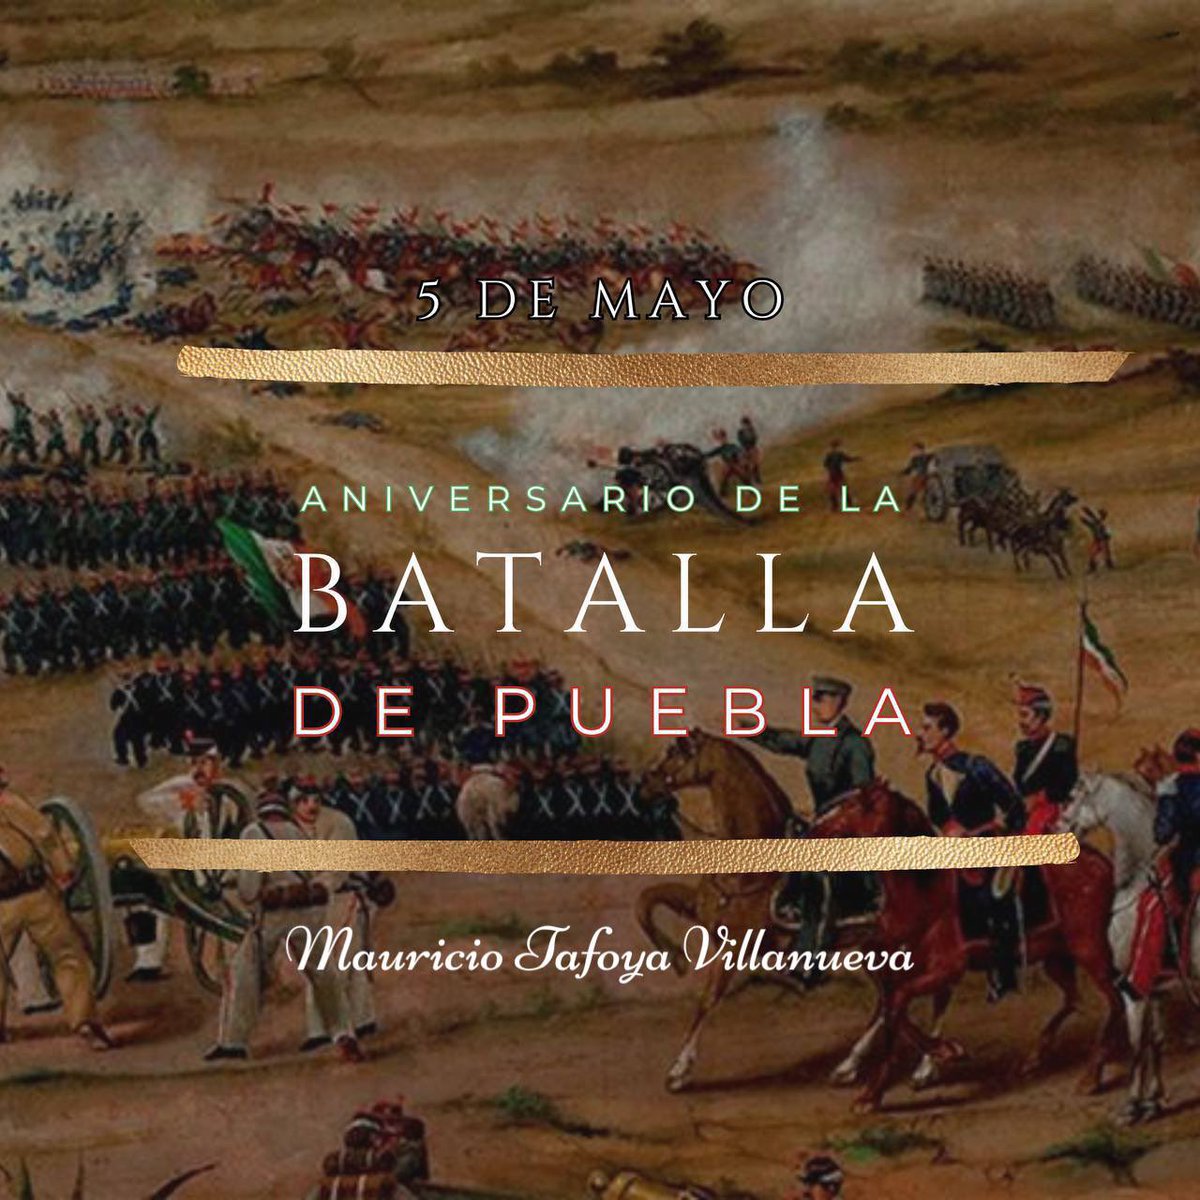 Hoy es el 162 Aniversario de la #BatalladePuebla tuvo lugar el 5 de mayo de 1862, que dio inicio con el disparo de un cañón mexicano; Hoy celebramos una de las victorias más gloriosas que se ha registrado en nuestro país 🇲🇽. 

#VivaMéxico 🇲🇽 !!!